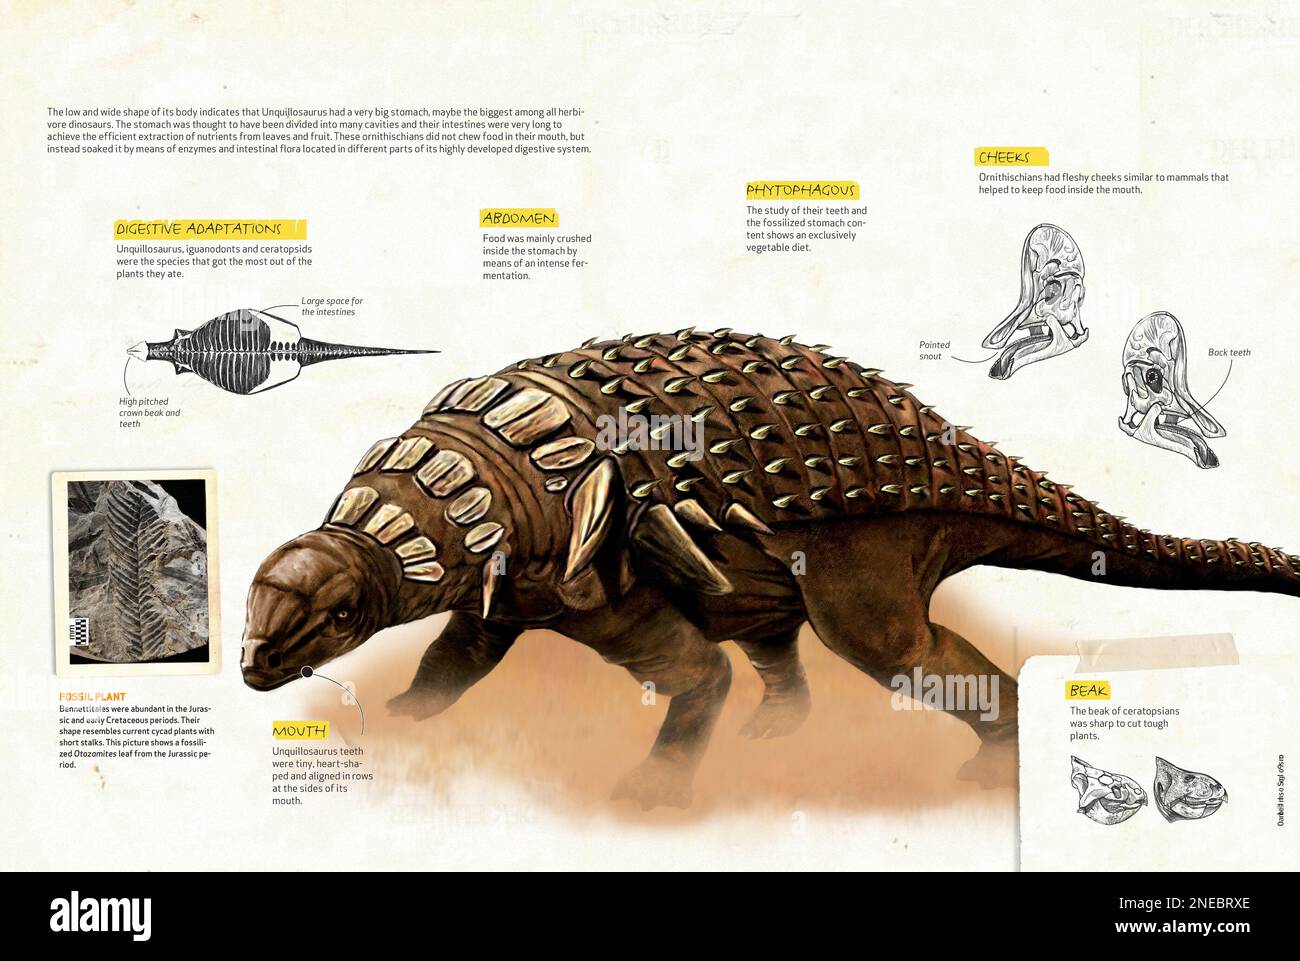 Infografica che descrive l'anatomia dell'ankylosauro, uno dei dinosauri erbivori che viveva nel periodo cretaceo dell'era mesozoica. [QuarkXPress (.qxp); 4842x3248]. Foto Stock